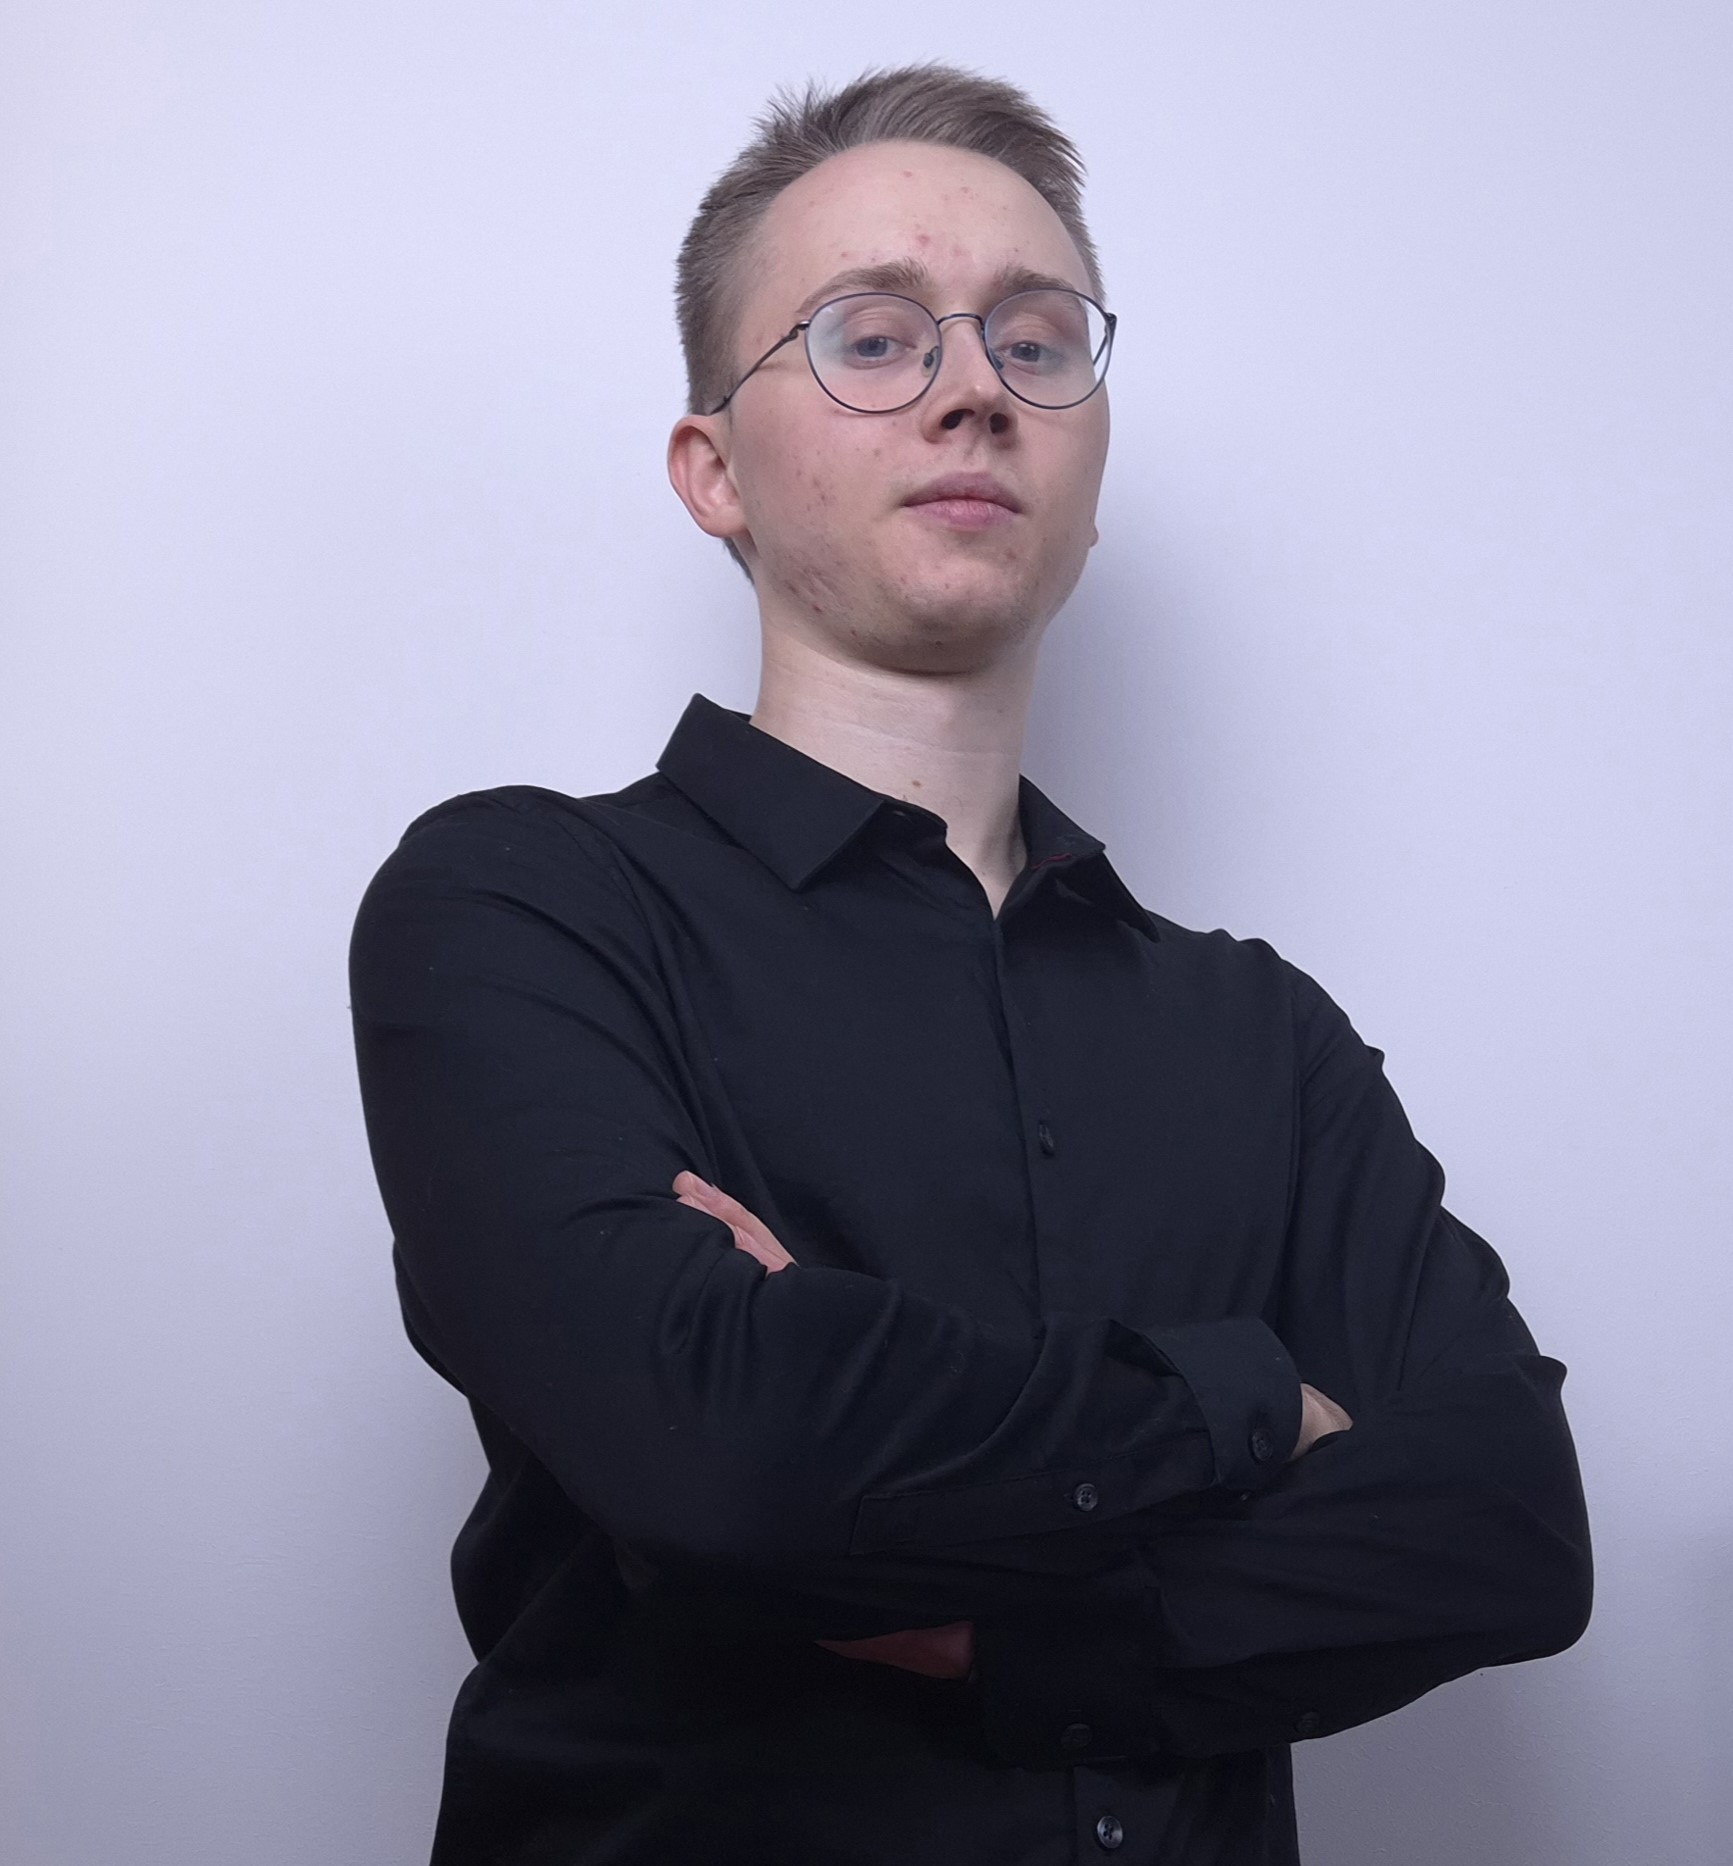 Mateusz Kochanek, AI Scientist, ML Researcher and Software Developer